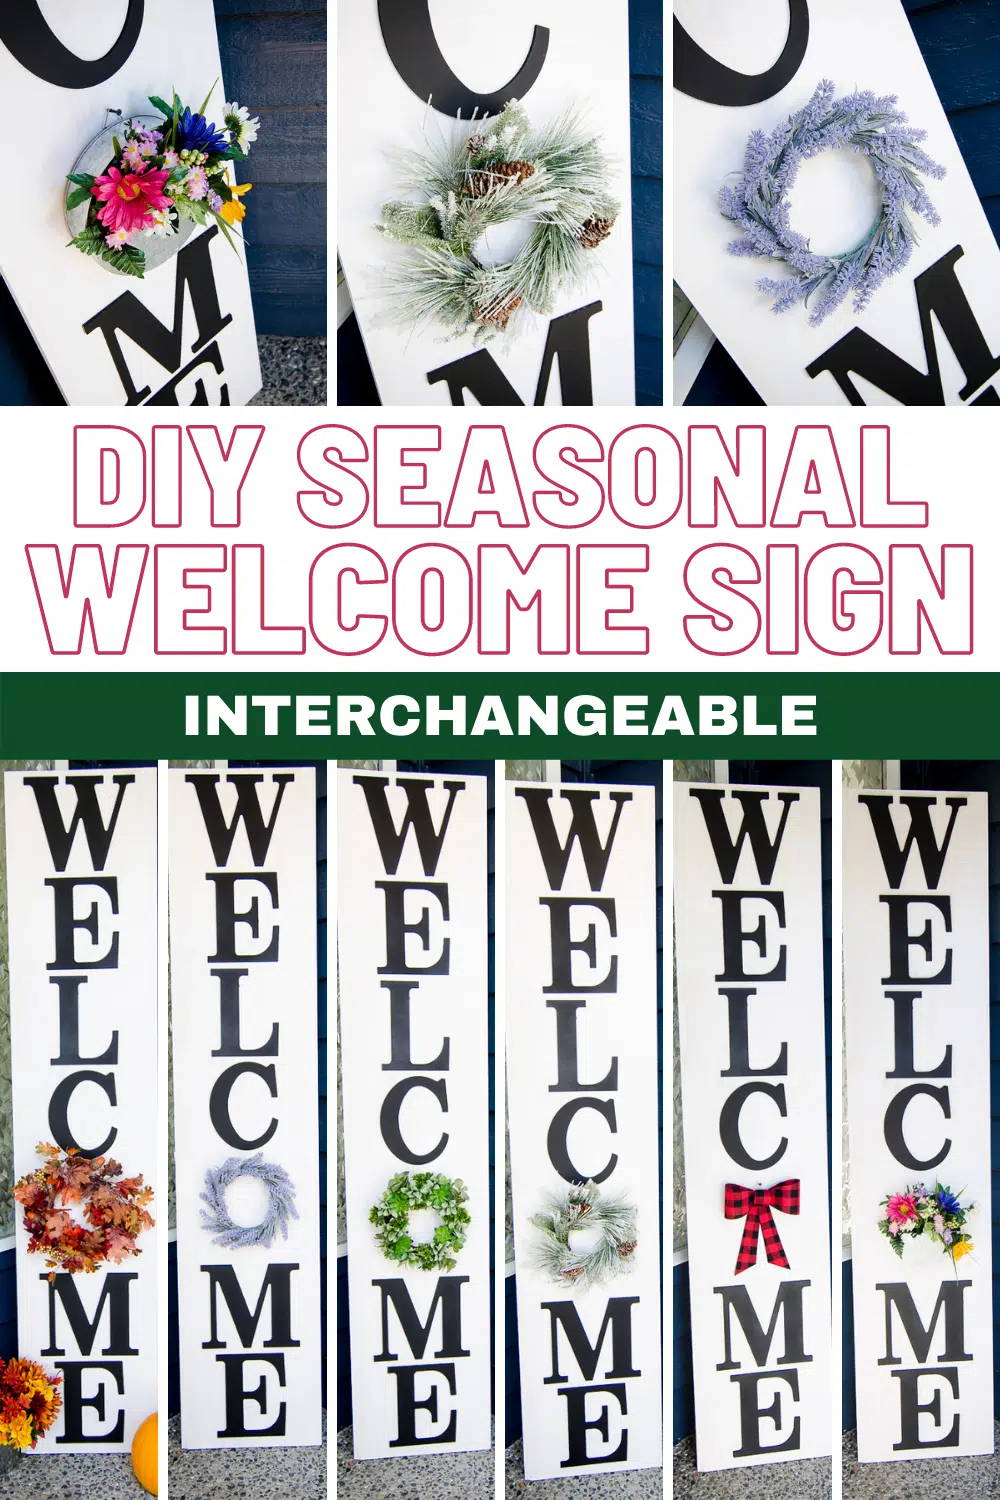 DIY seasonal welcome sign {interchangeable}